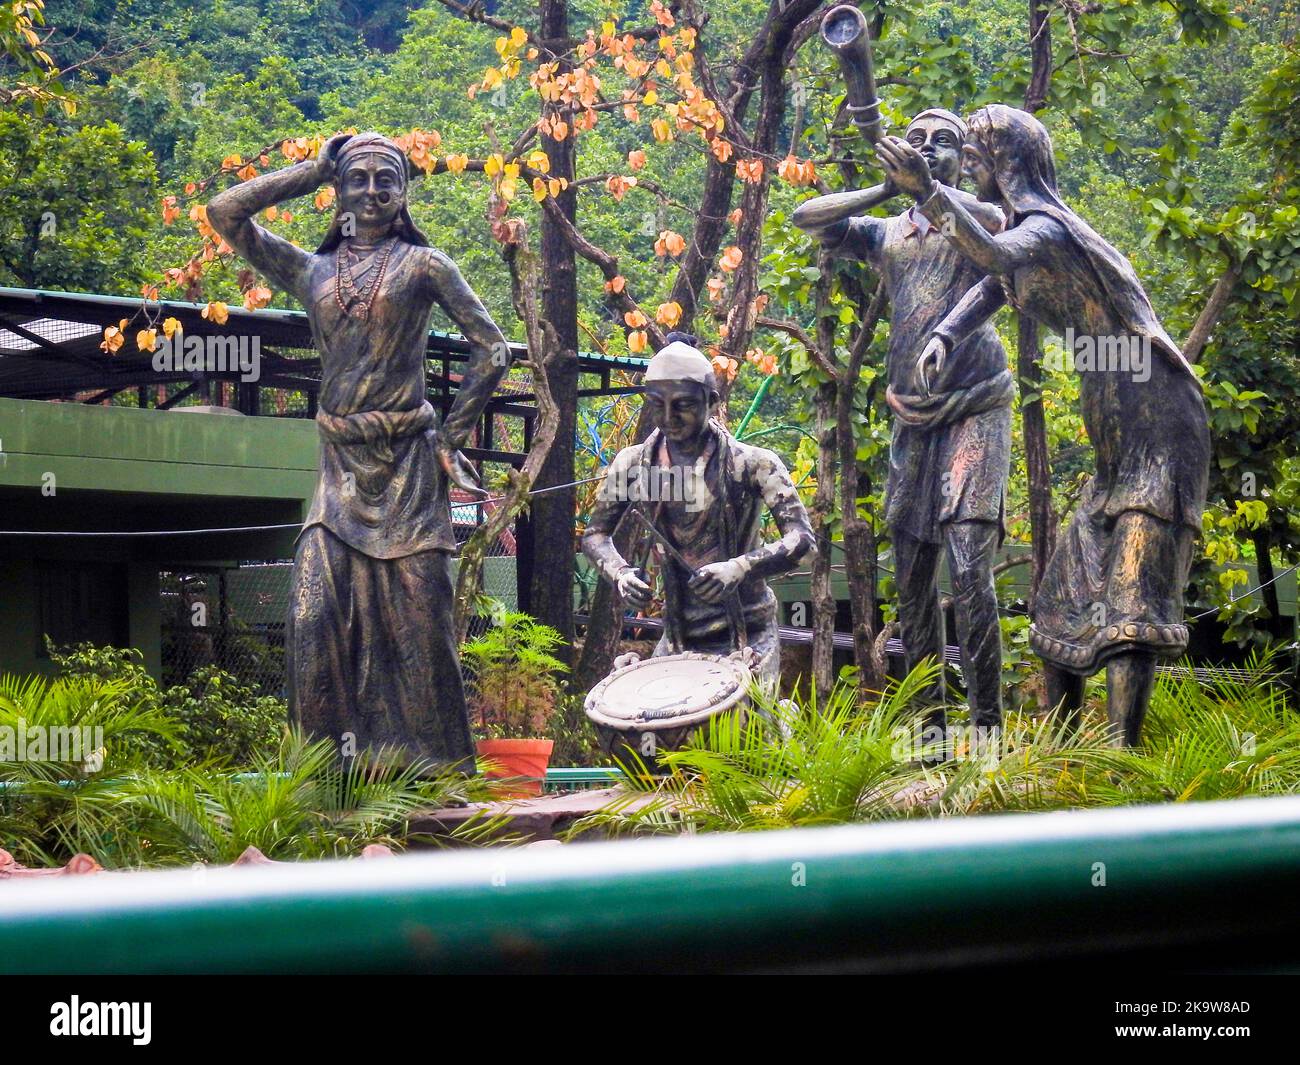 Noviembre 9th 2018. Ciudad de Dehradun Uttarakhand India. Estatuas de bronce de personas que representan música y danzas locales en el zoológico de la ciudad de Malsi. Foto de stock